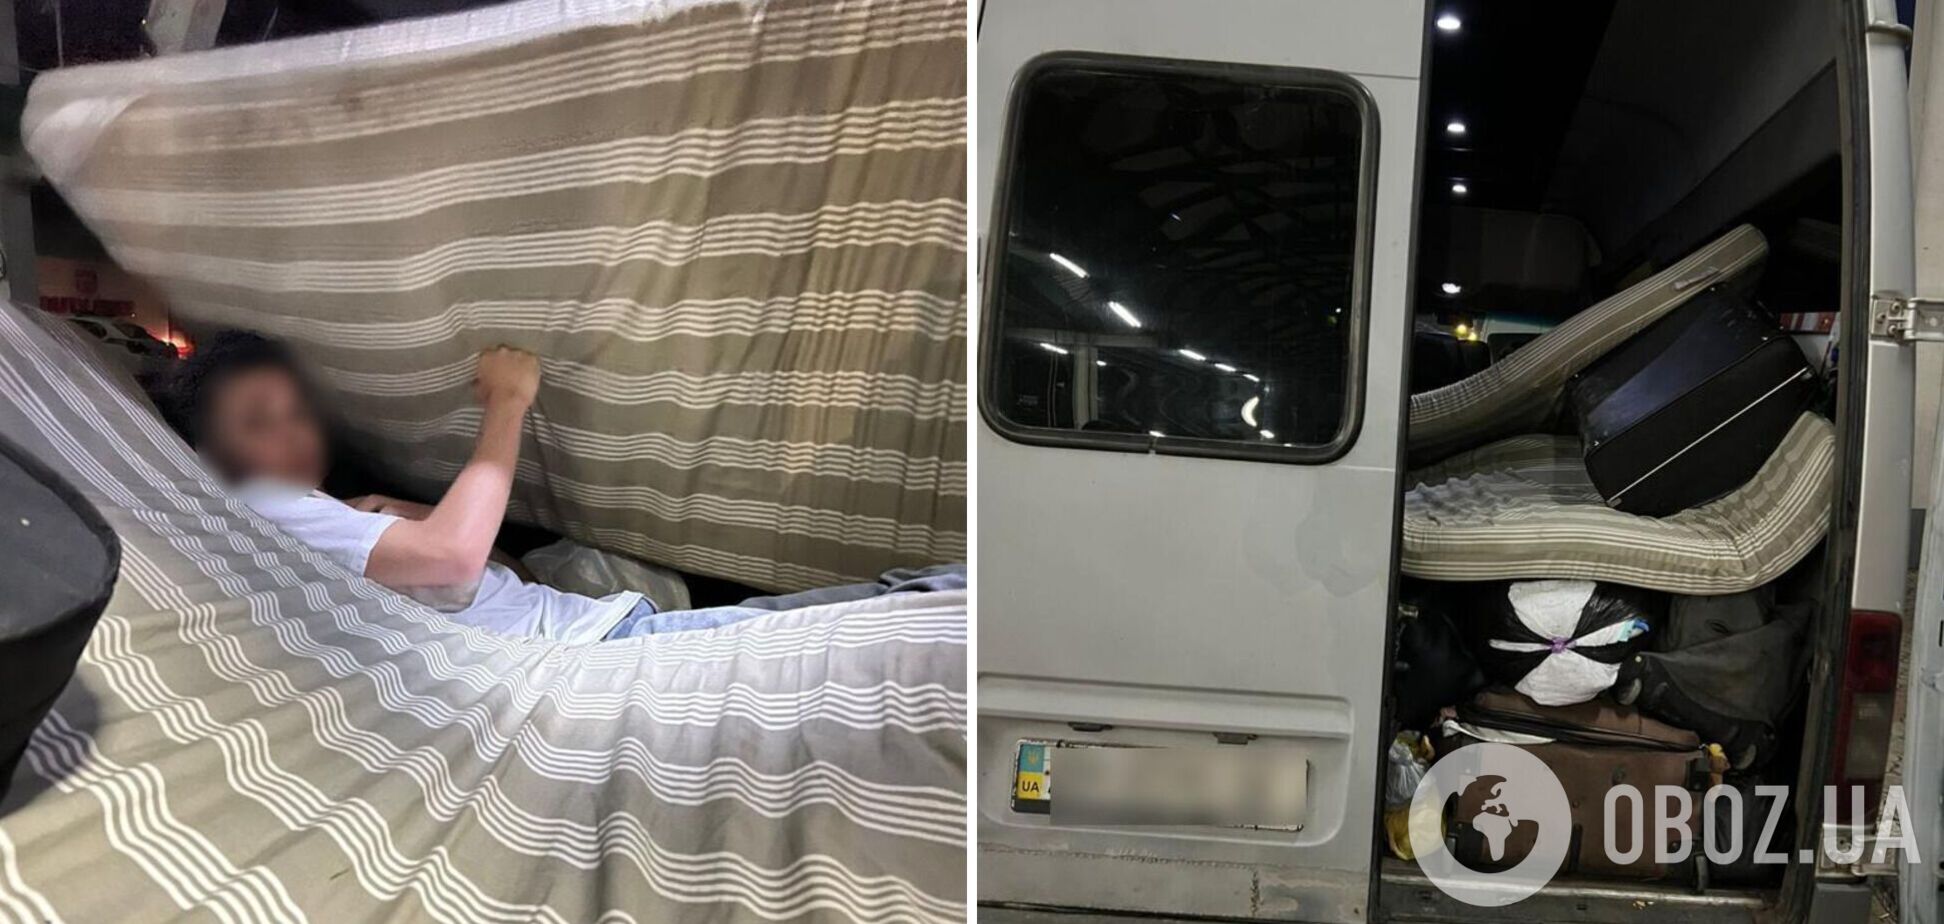 Украинец скрылся в матрасе, чтобы выехать в Польшу, но его разоблачили. Фото